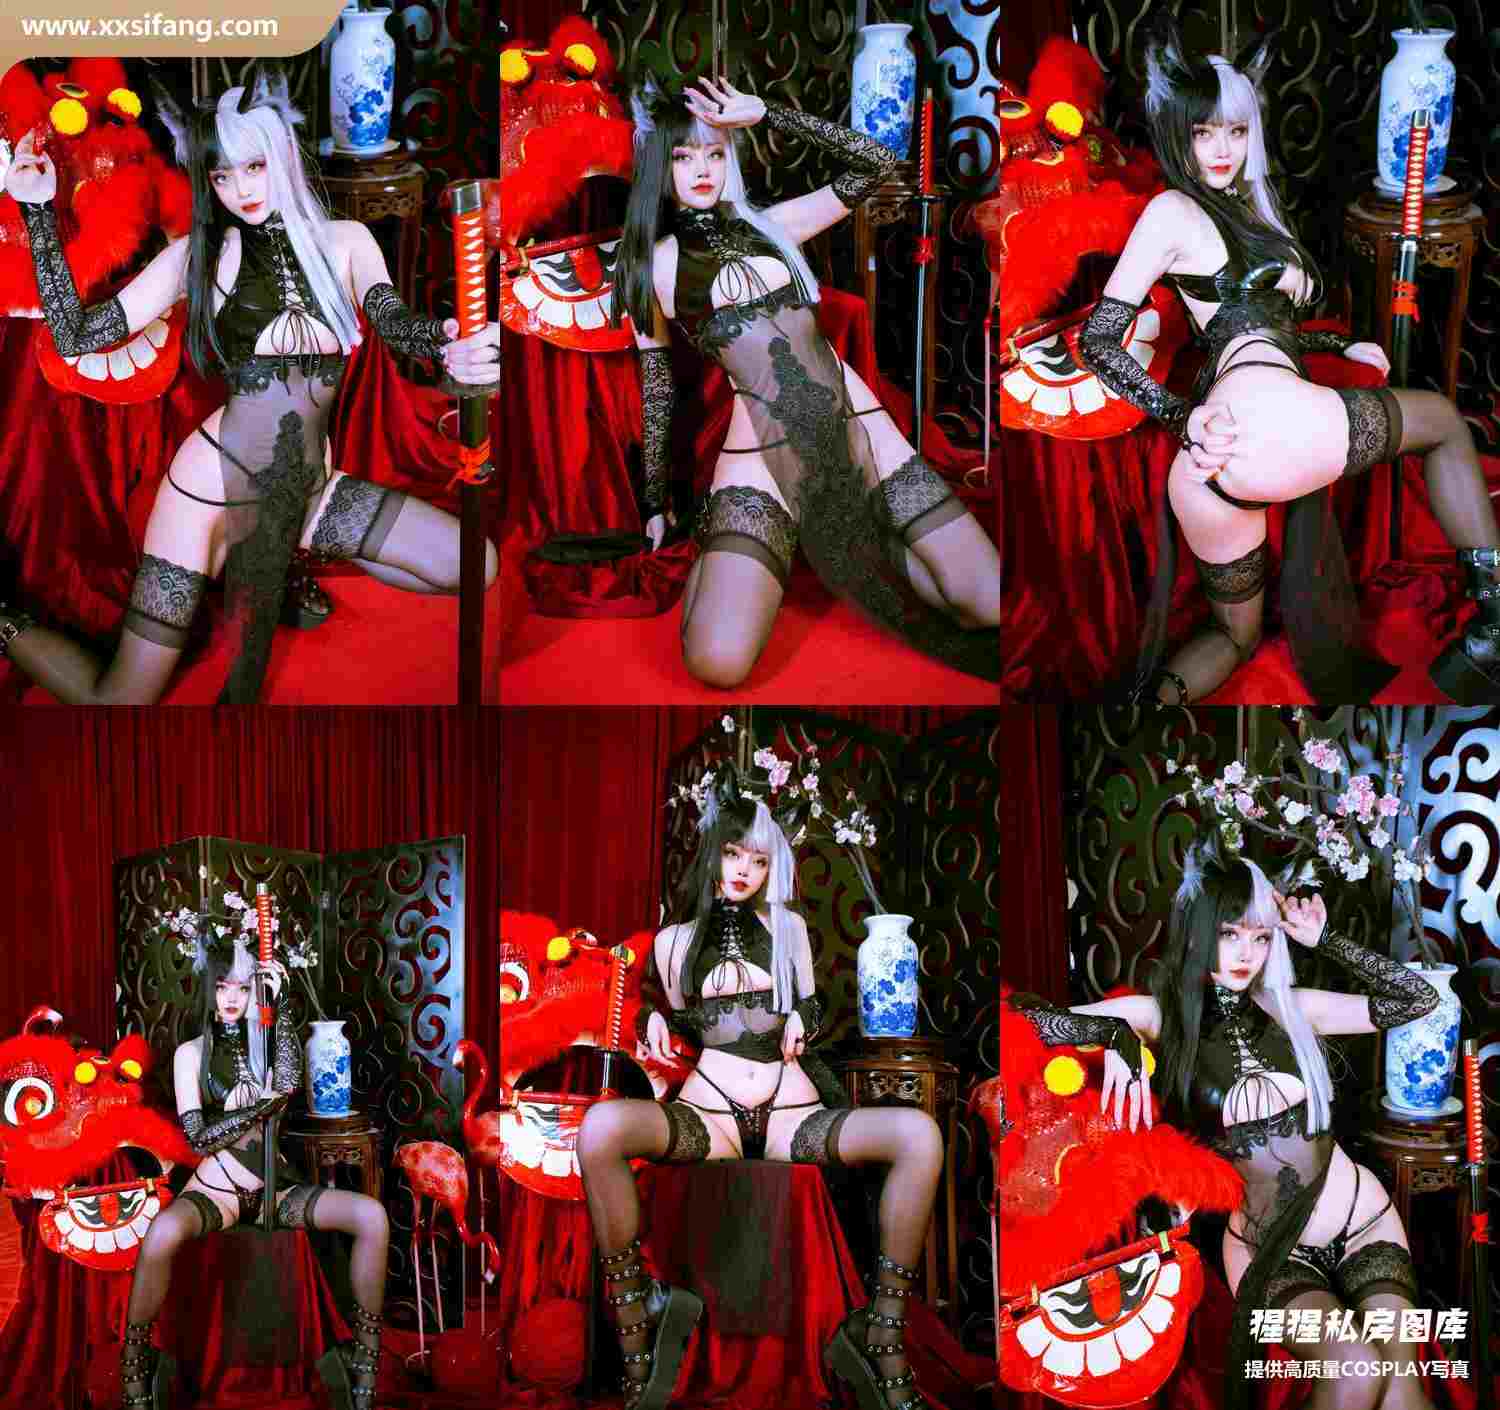 [图片2]-Byoru写真集《Luna Moon Festival HD Set》高清套图下载[25P]插图-猩猩私房